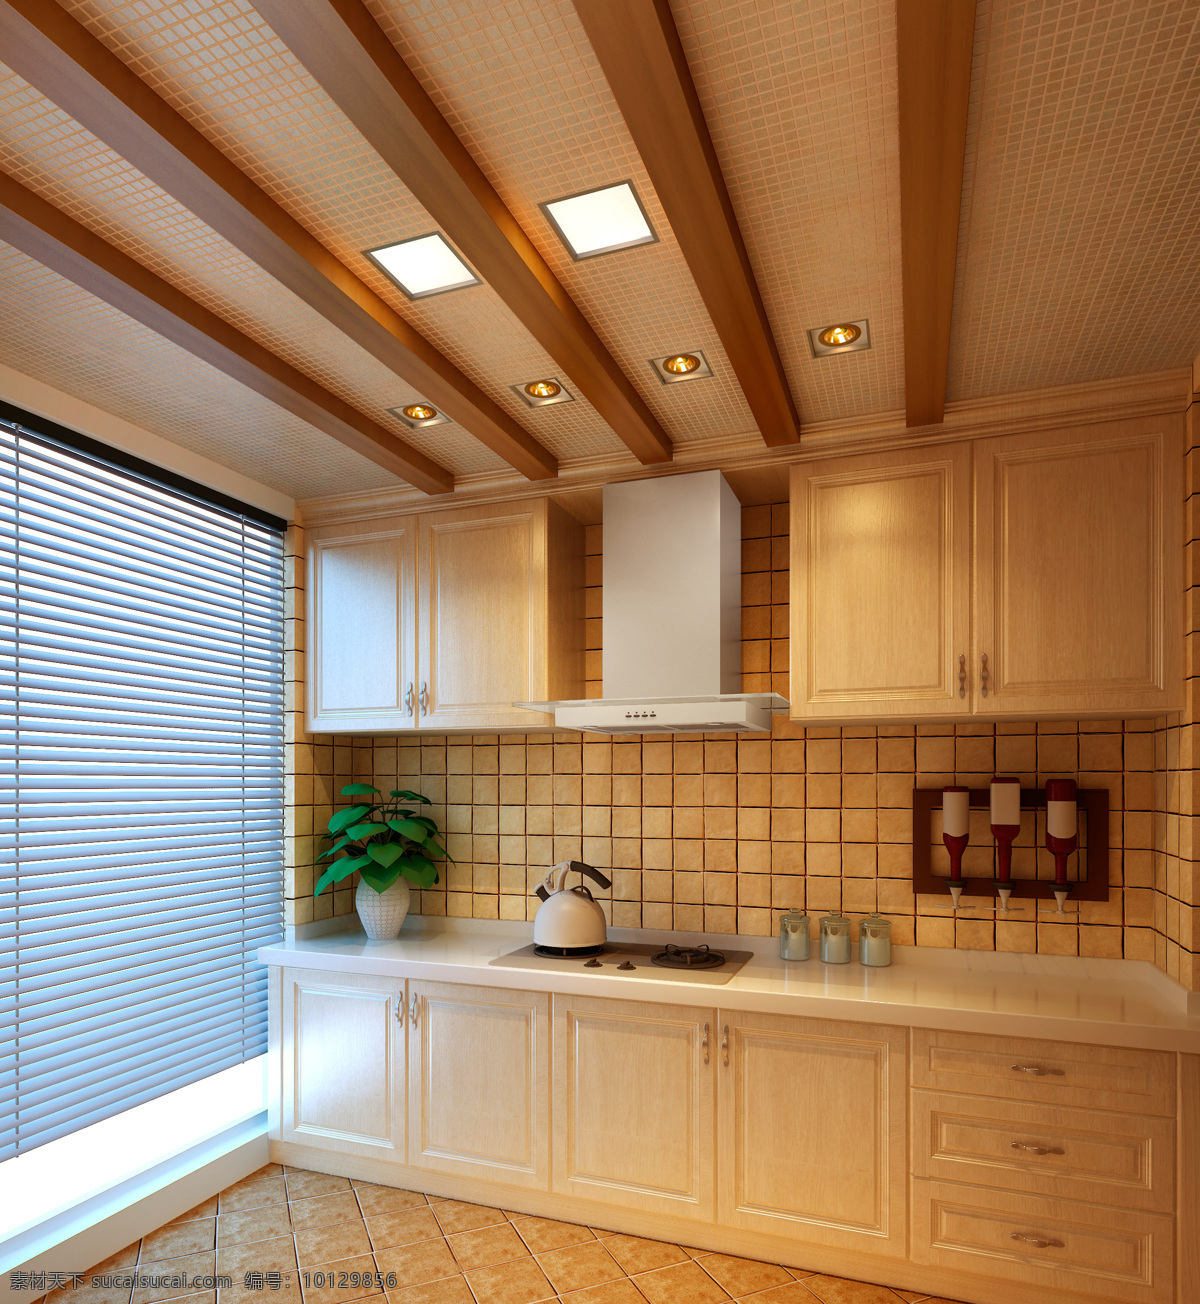 温馨 简约 风 室内设计 厨房 效果图 现代 料理台 暖色调 条纹 壁柜 收纳柜 家装